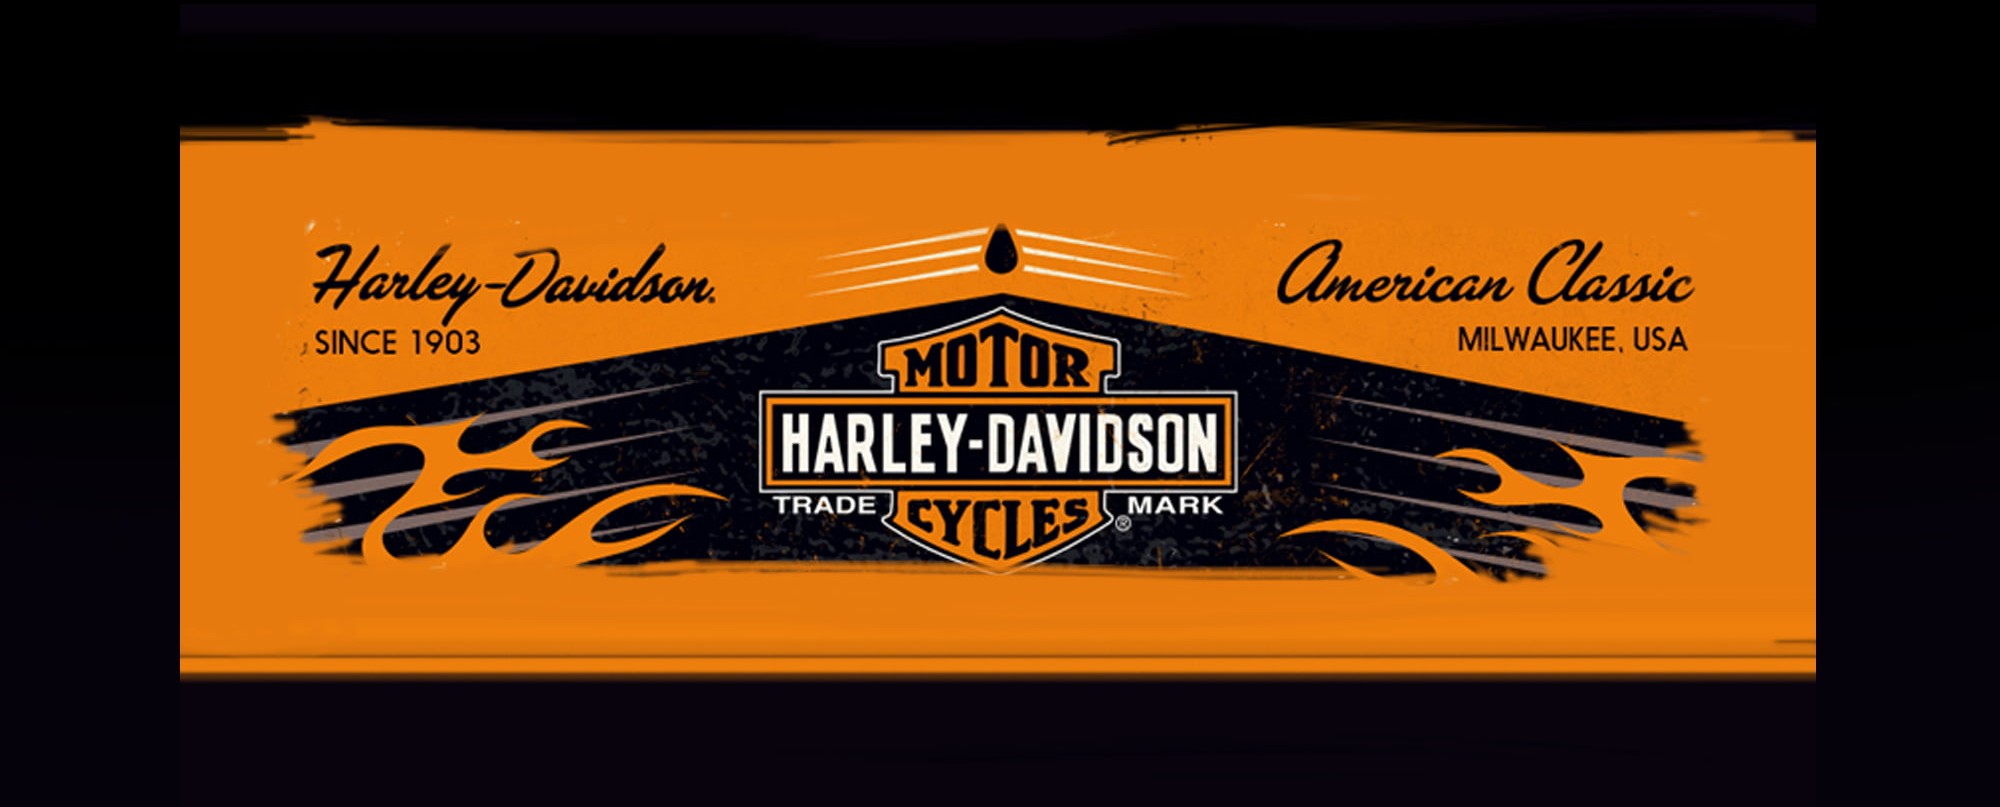 Harley blechschild - Die hochwertigsten Harley blechschild im Überblick!